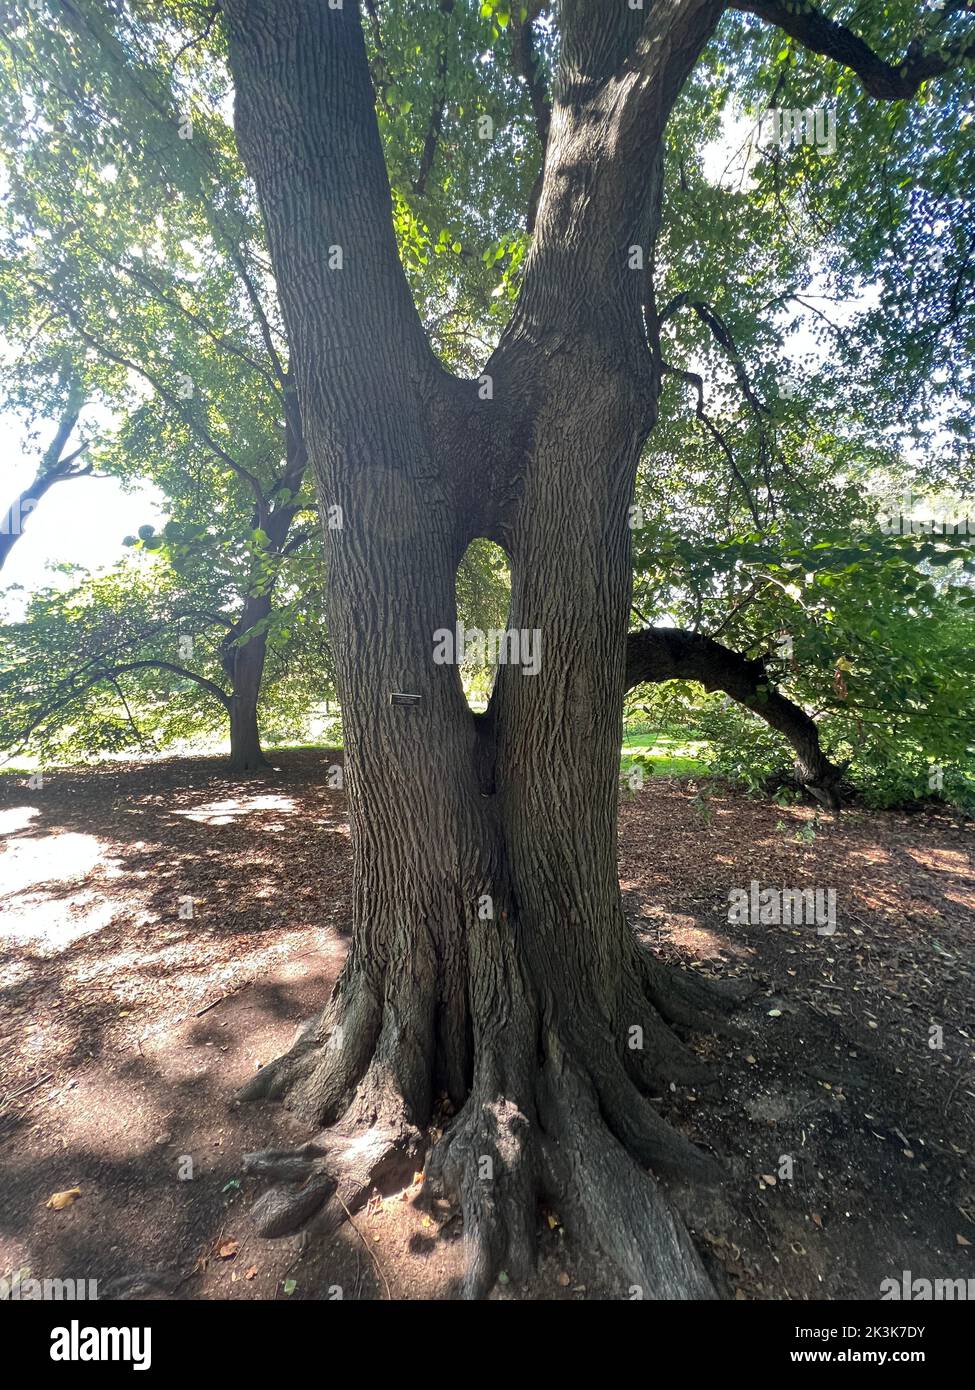 Unique Caucasien Linden Tree où deux troncs ont grandi ensemble pour le soutien mutuel. Prospet Park, Brooklyn, New York. Banque D'Images